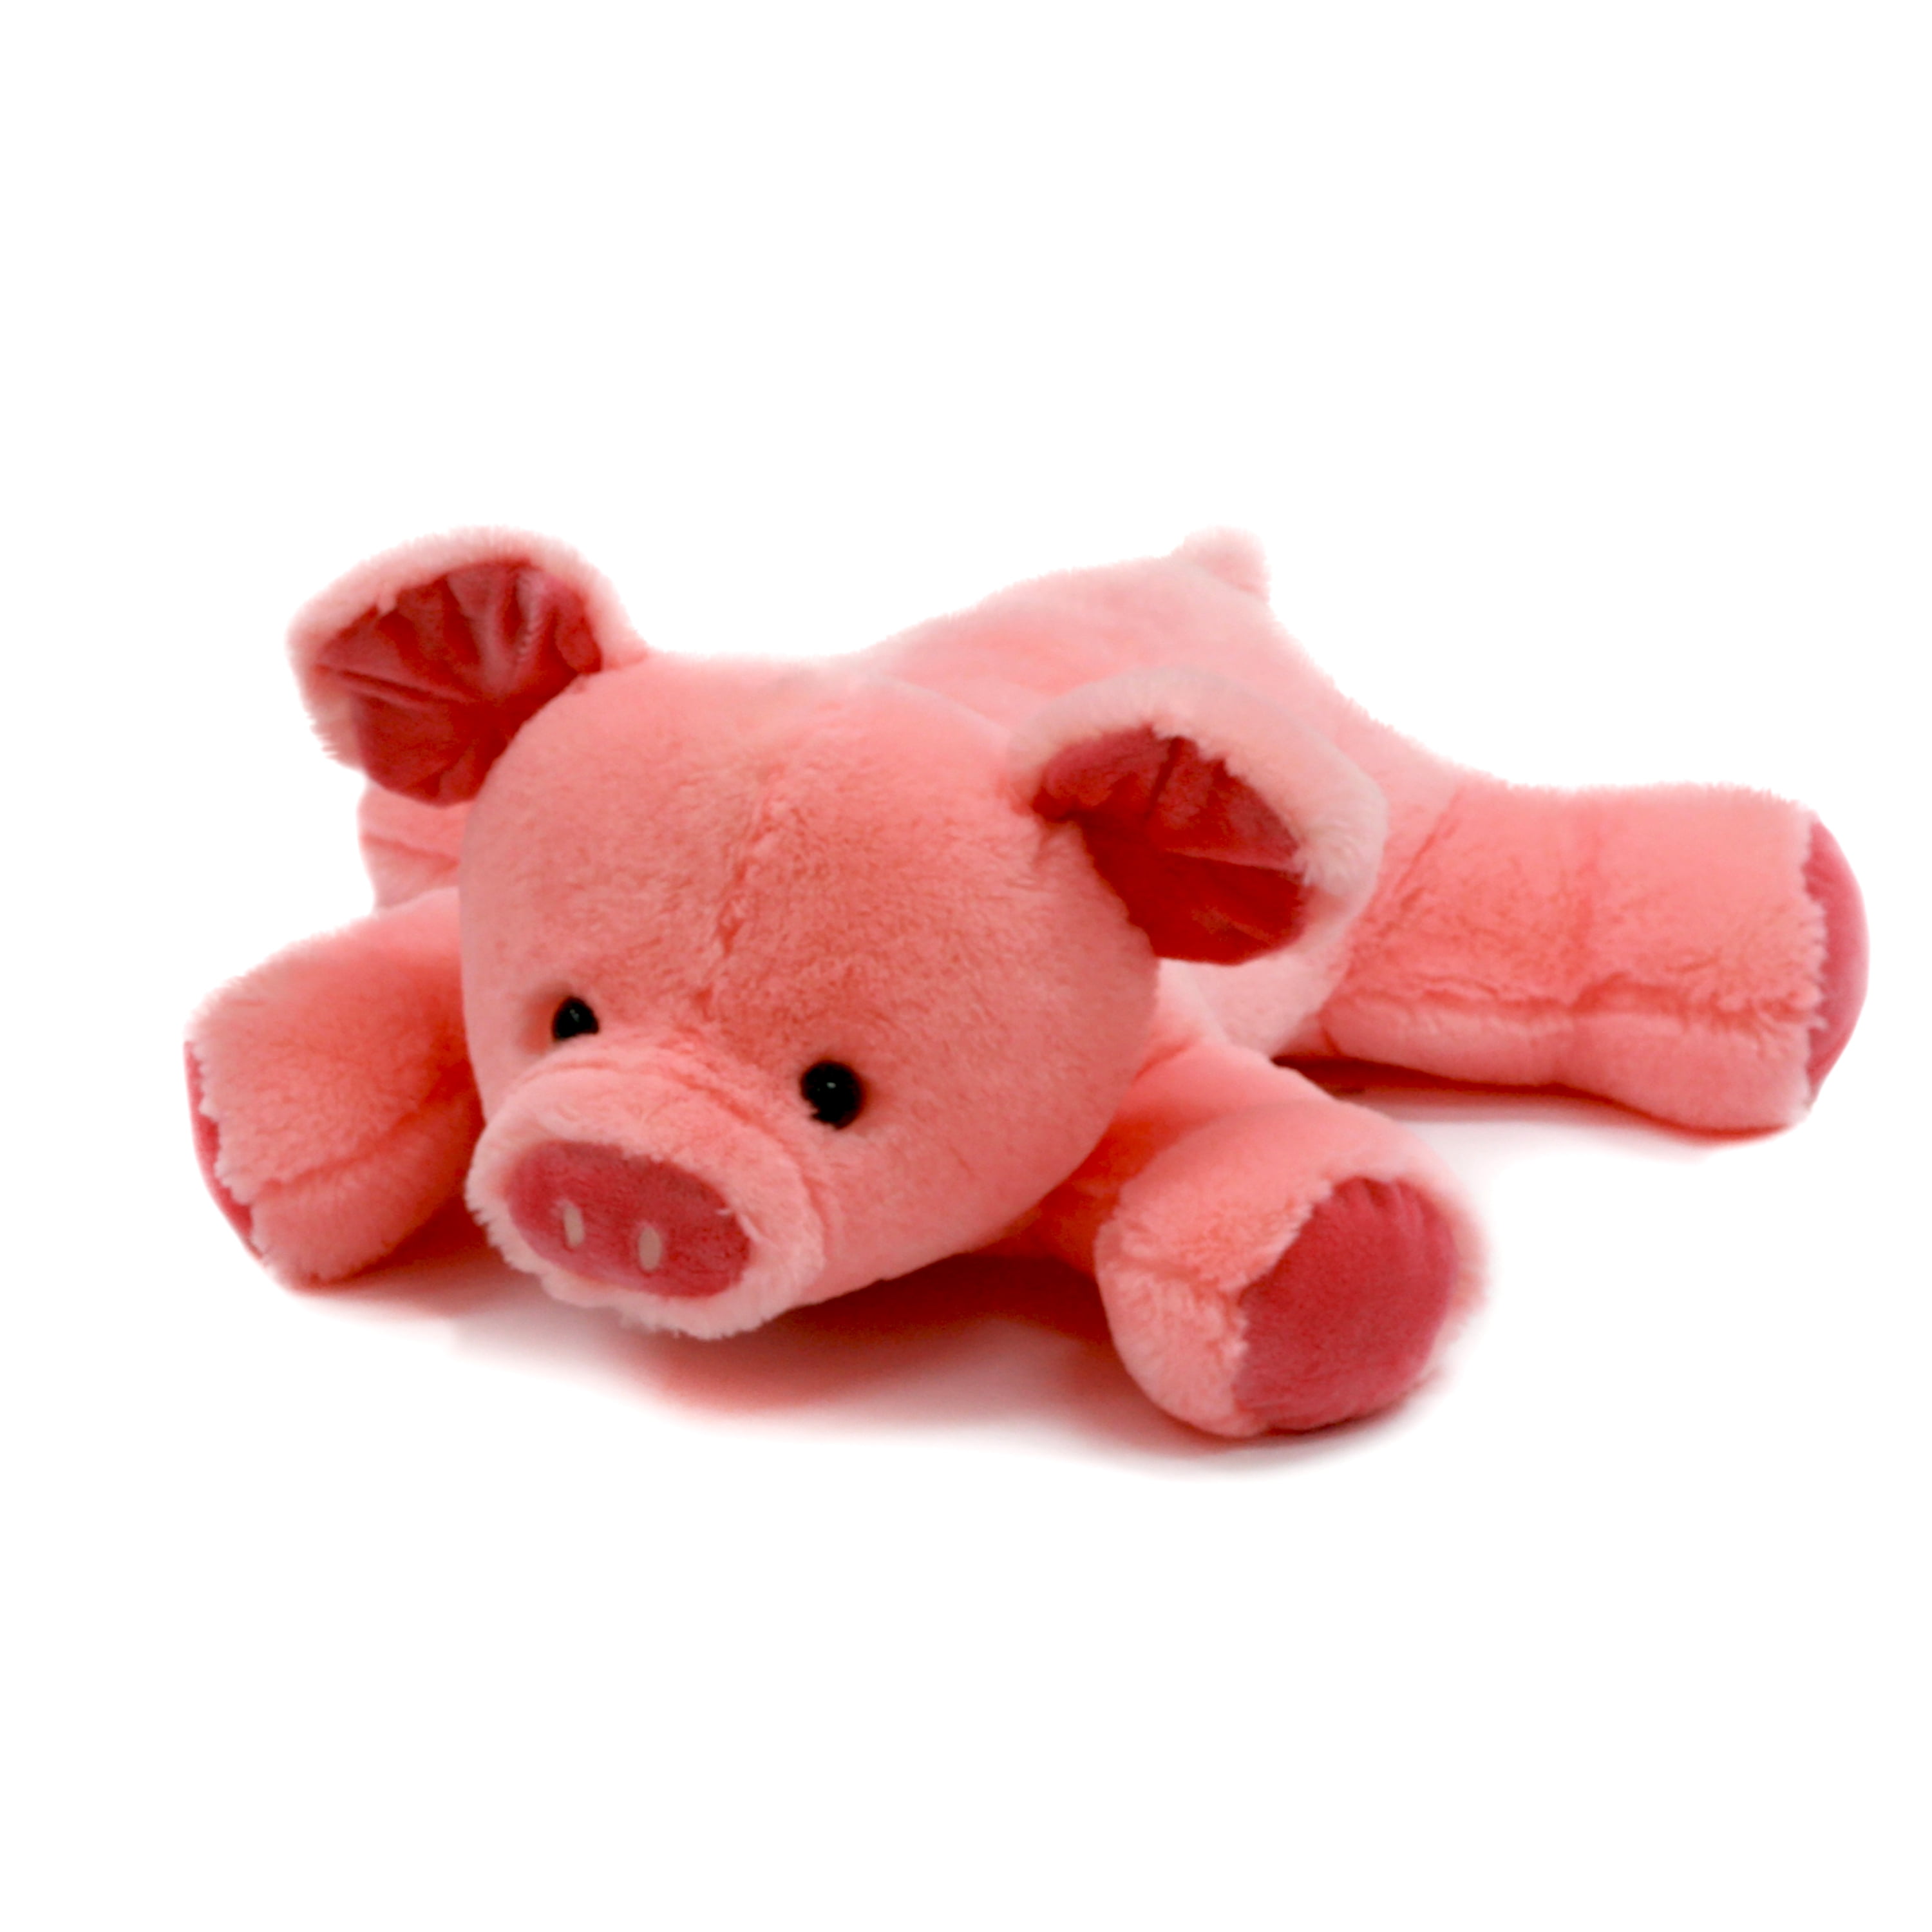 stuffies pig